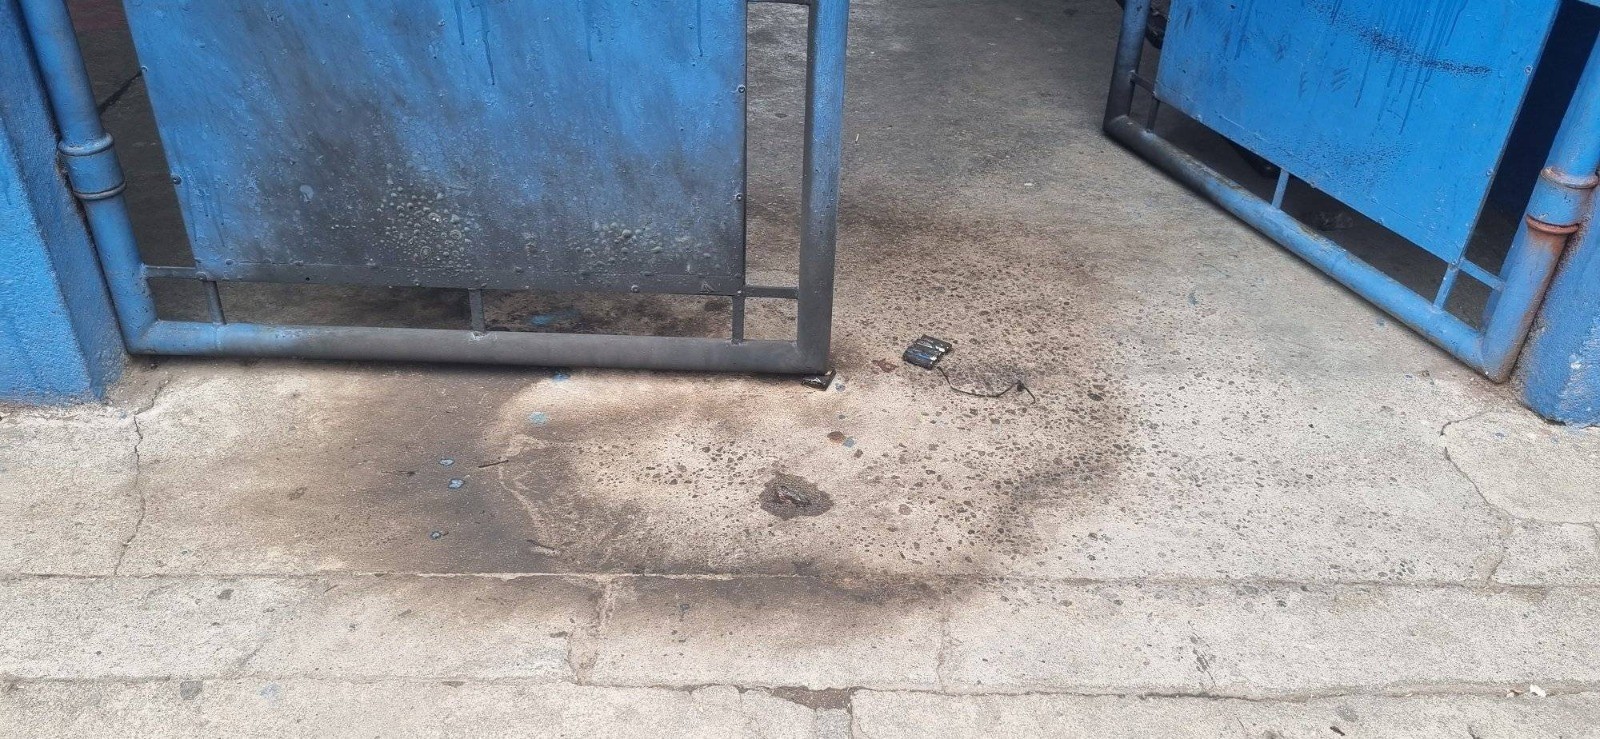 Menor de edad activa una bomba molotov en una escuela en la zona 2 de Xela